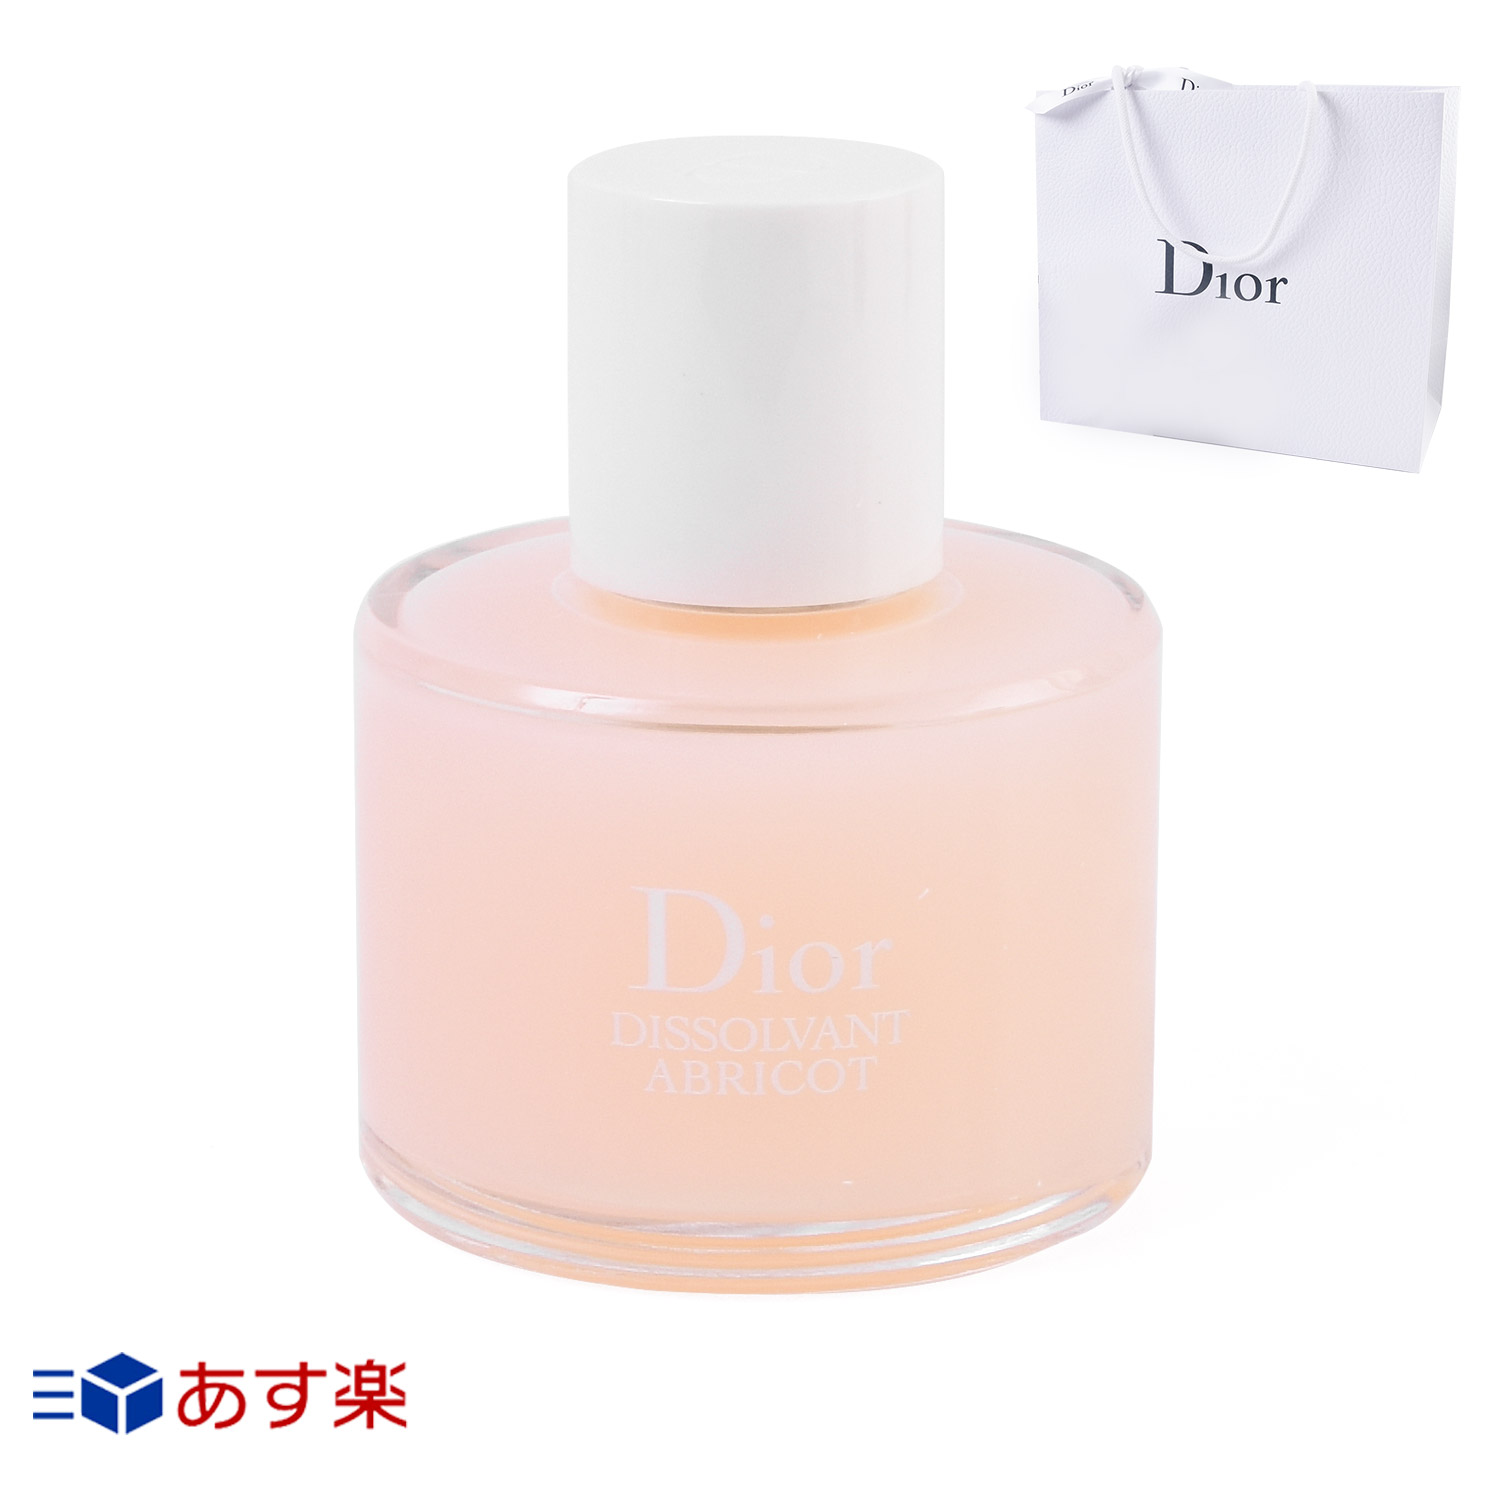 dior-022-50ml.jpg